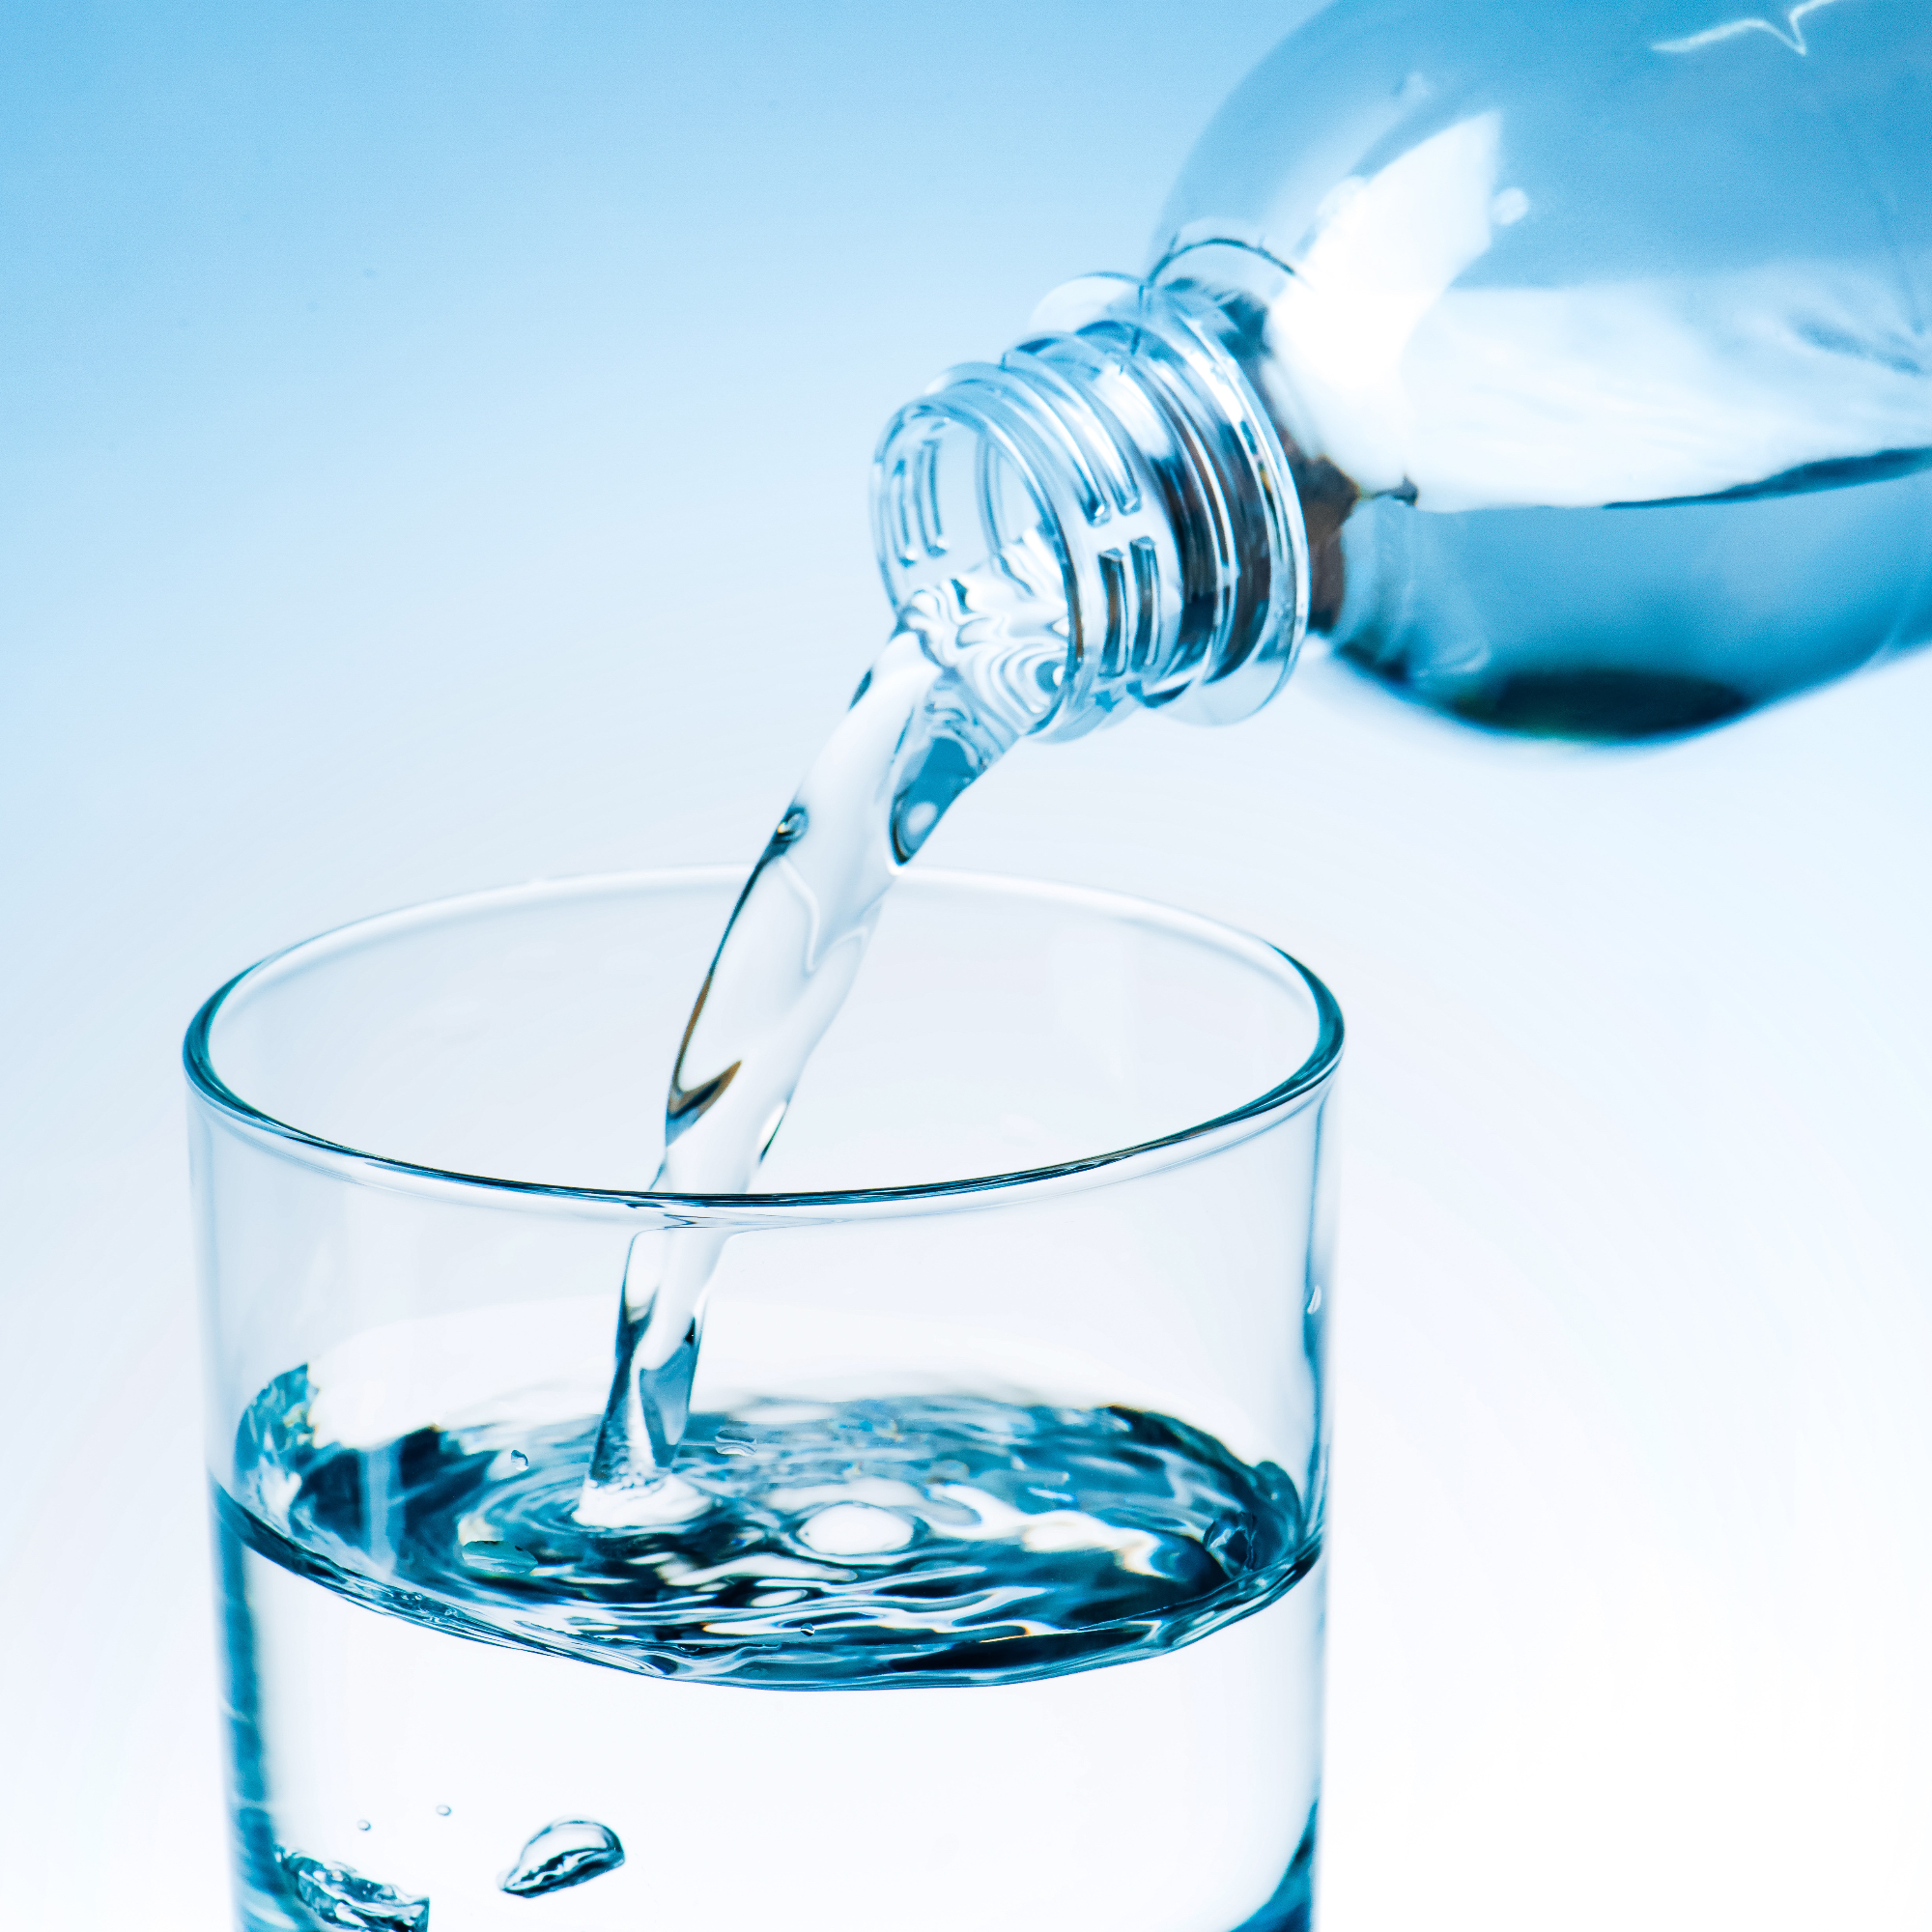 Pitna voda je na splošno za zdravje zelo pomembna